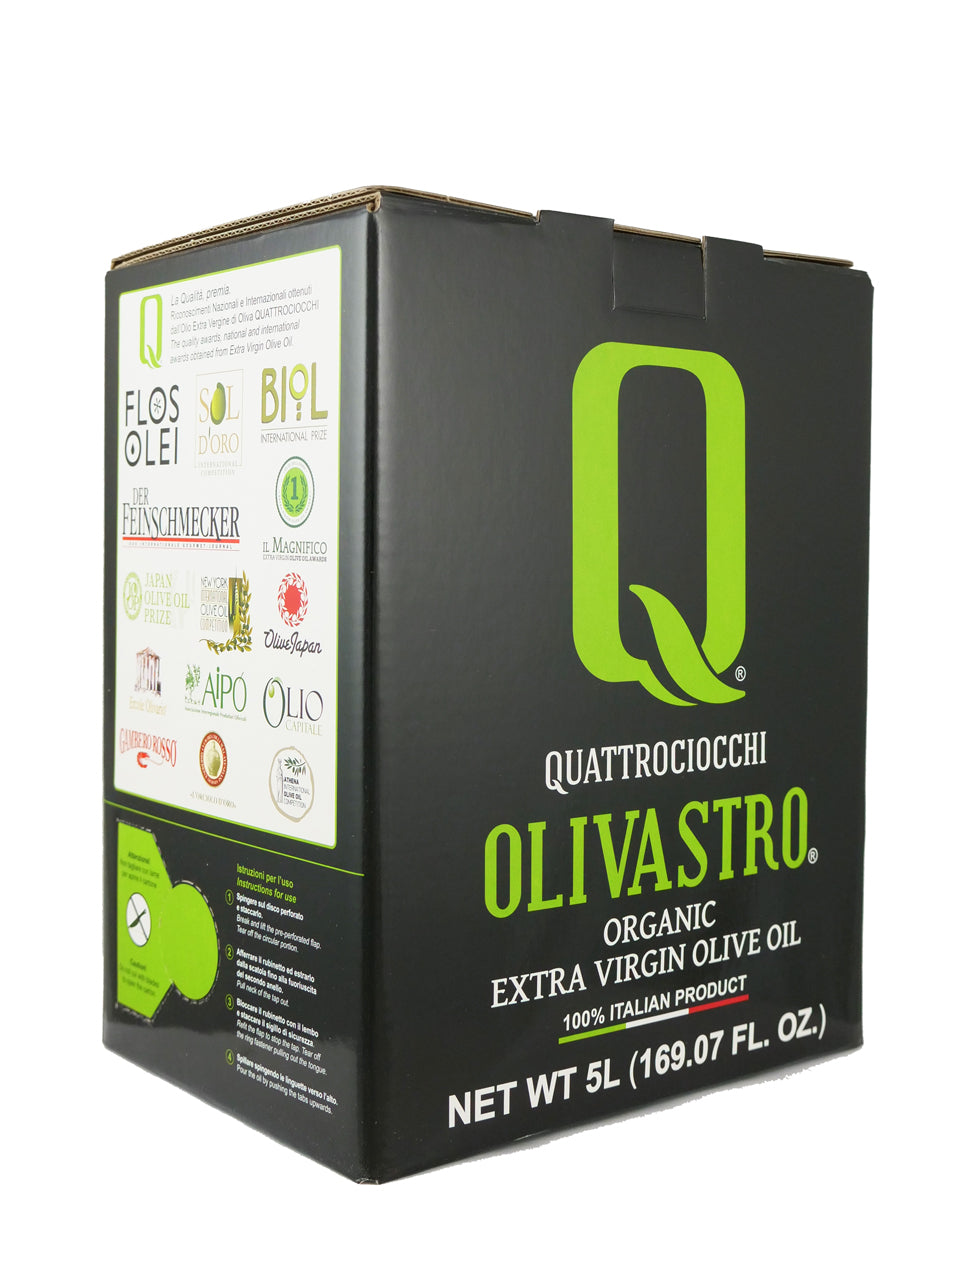 Quattrociocchi Olivastro Organic 5L Bag-in-Box